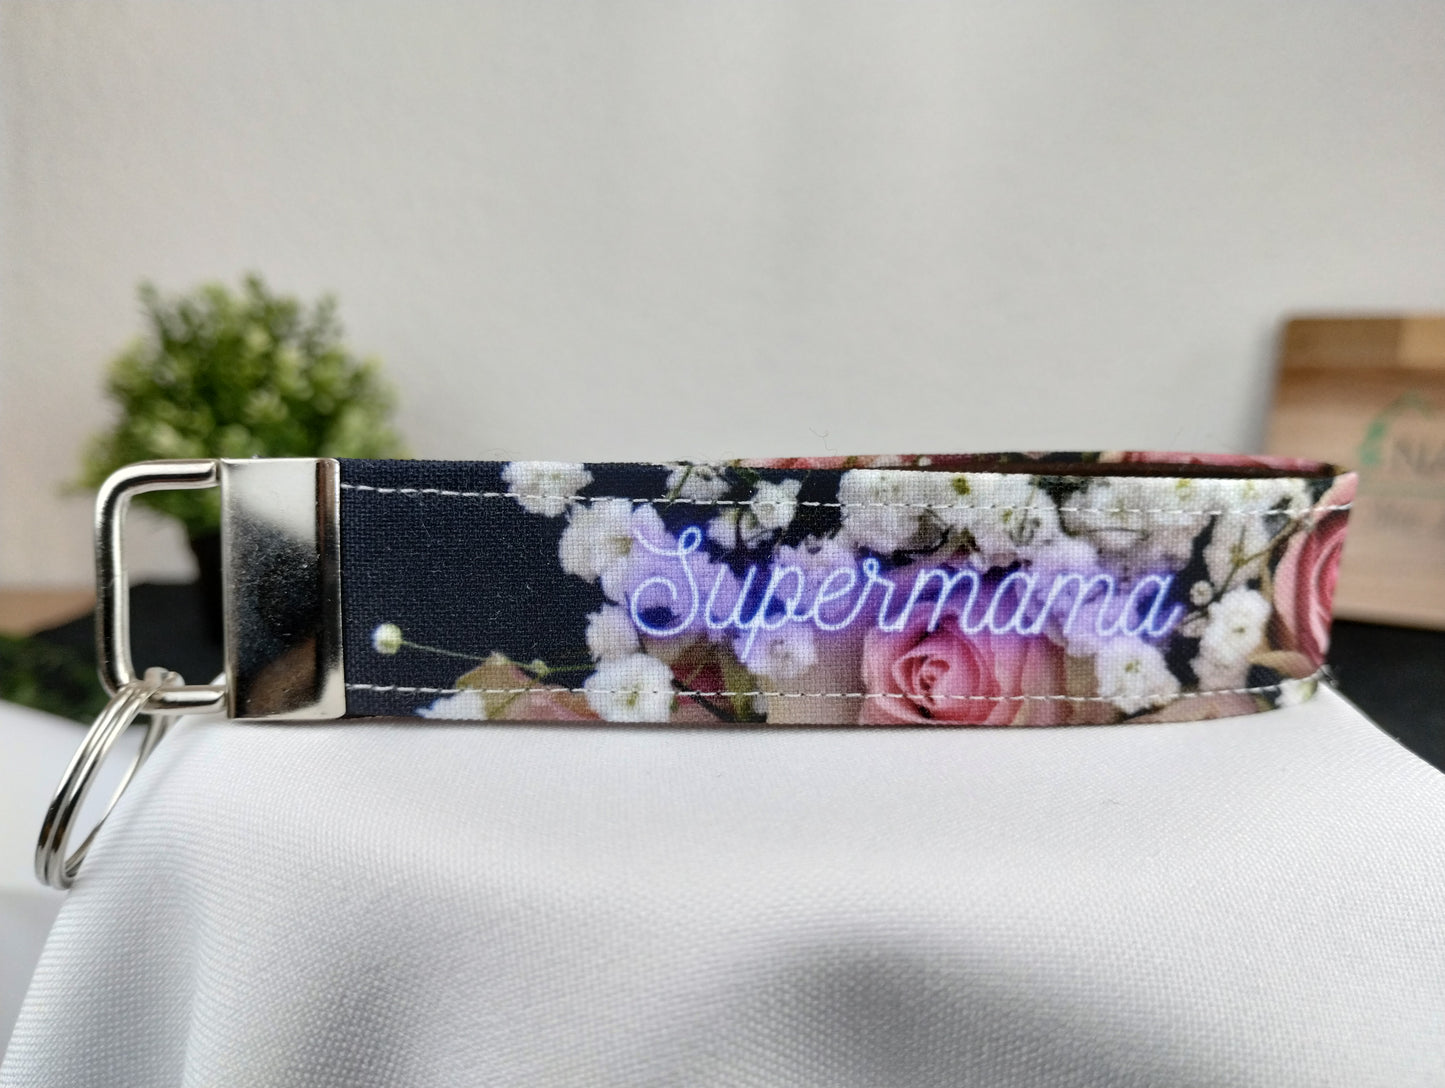 Personalisierbarer Schlüsselanhänger mit dunklem Blumenmotiv, lila/weißer Schrift und innen mit braunem Filz